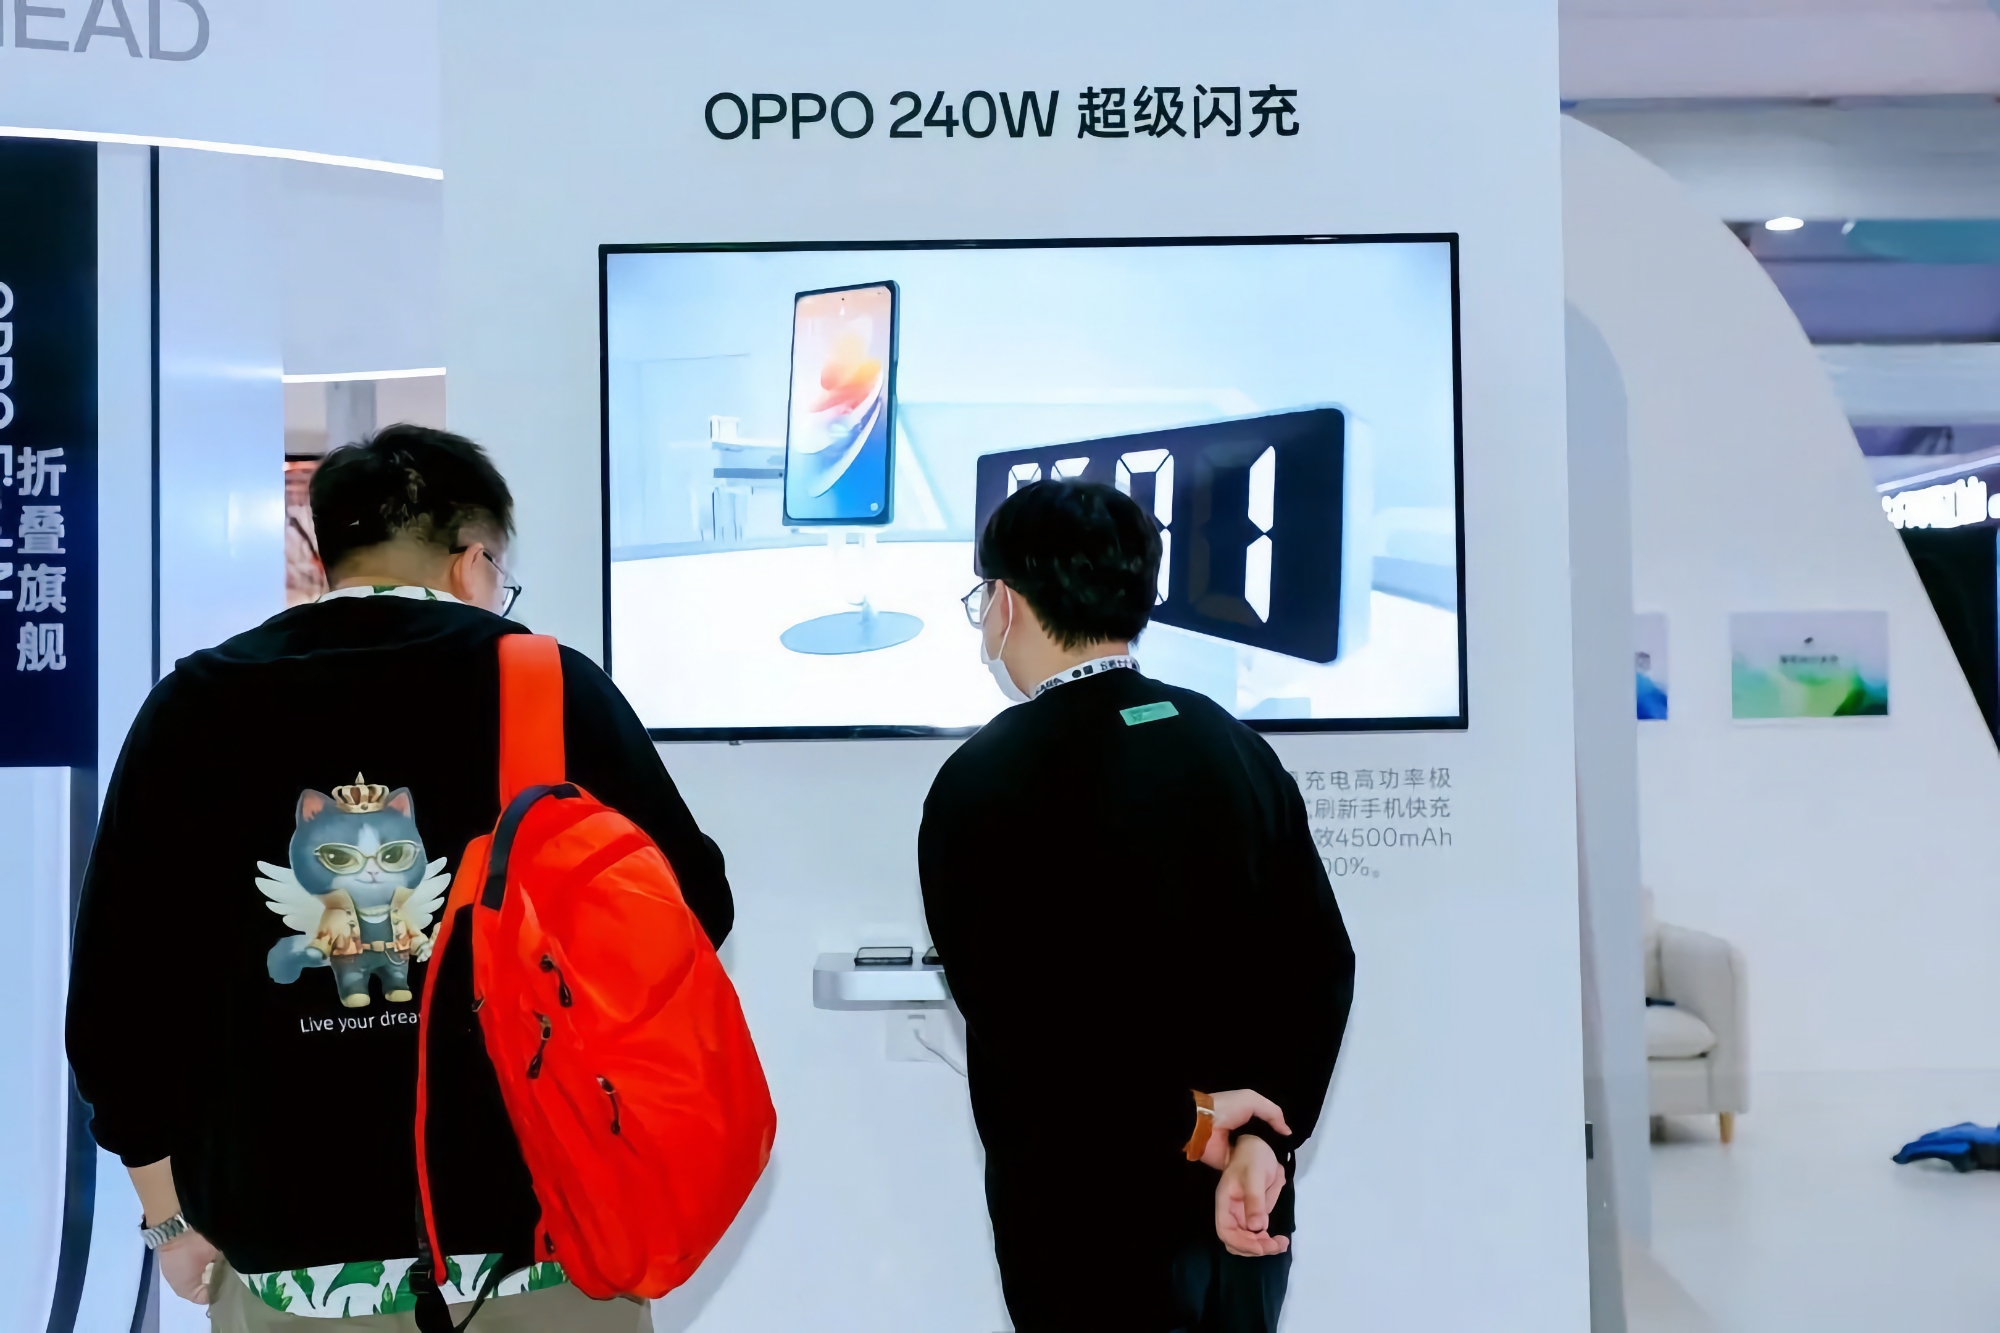 Insider: OPPO planuje wprowadzić technologię szybkiego ładowania smartfonów o mocy 240W w 2023 r.